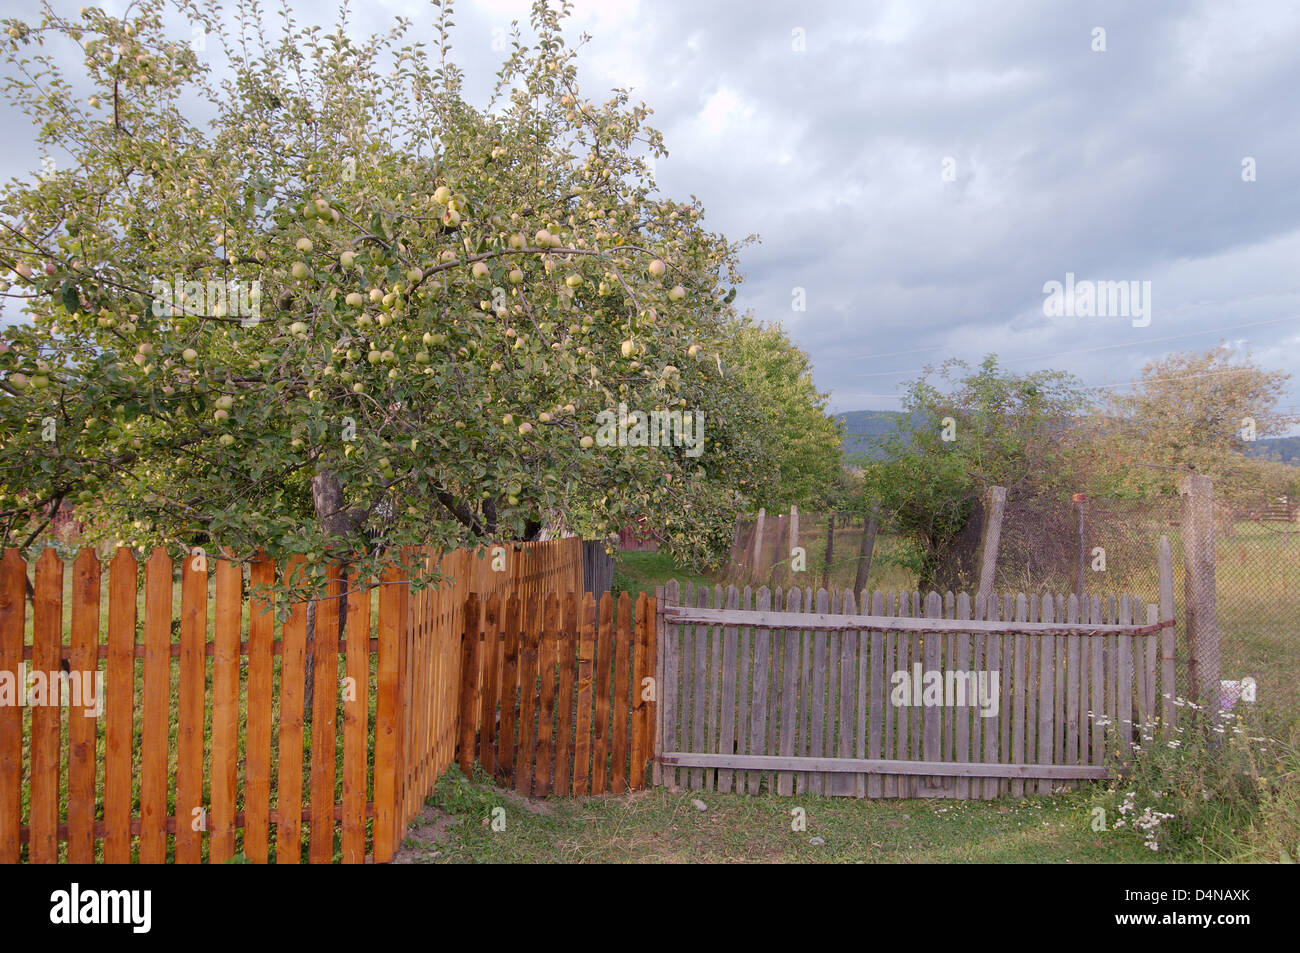 apple-tree, Transilvania, Romania, Europe Stock Photo